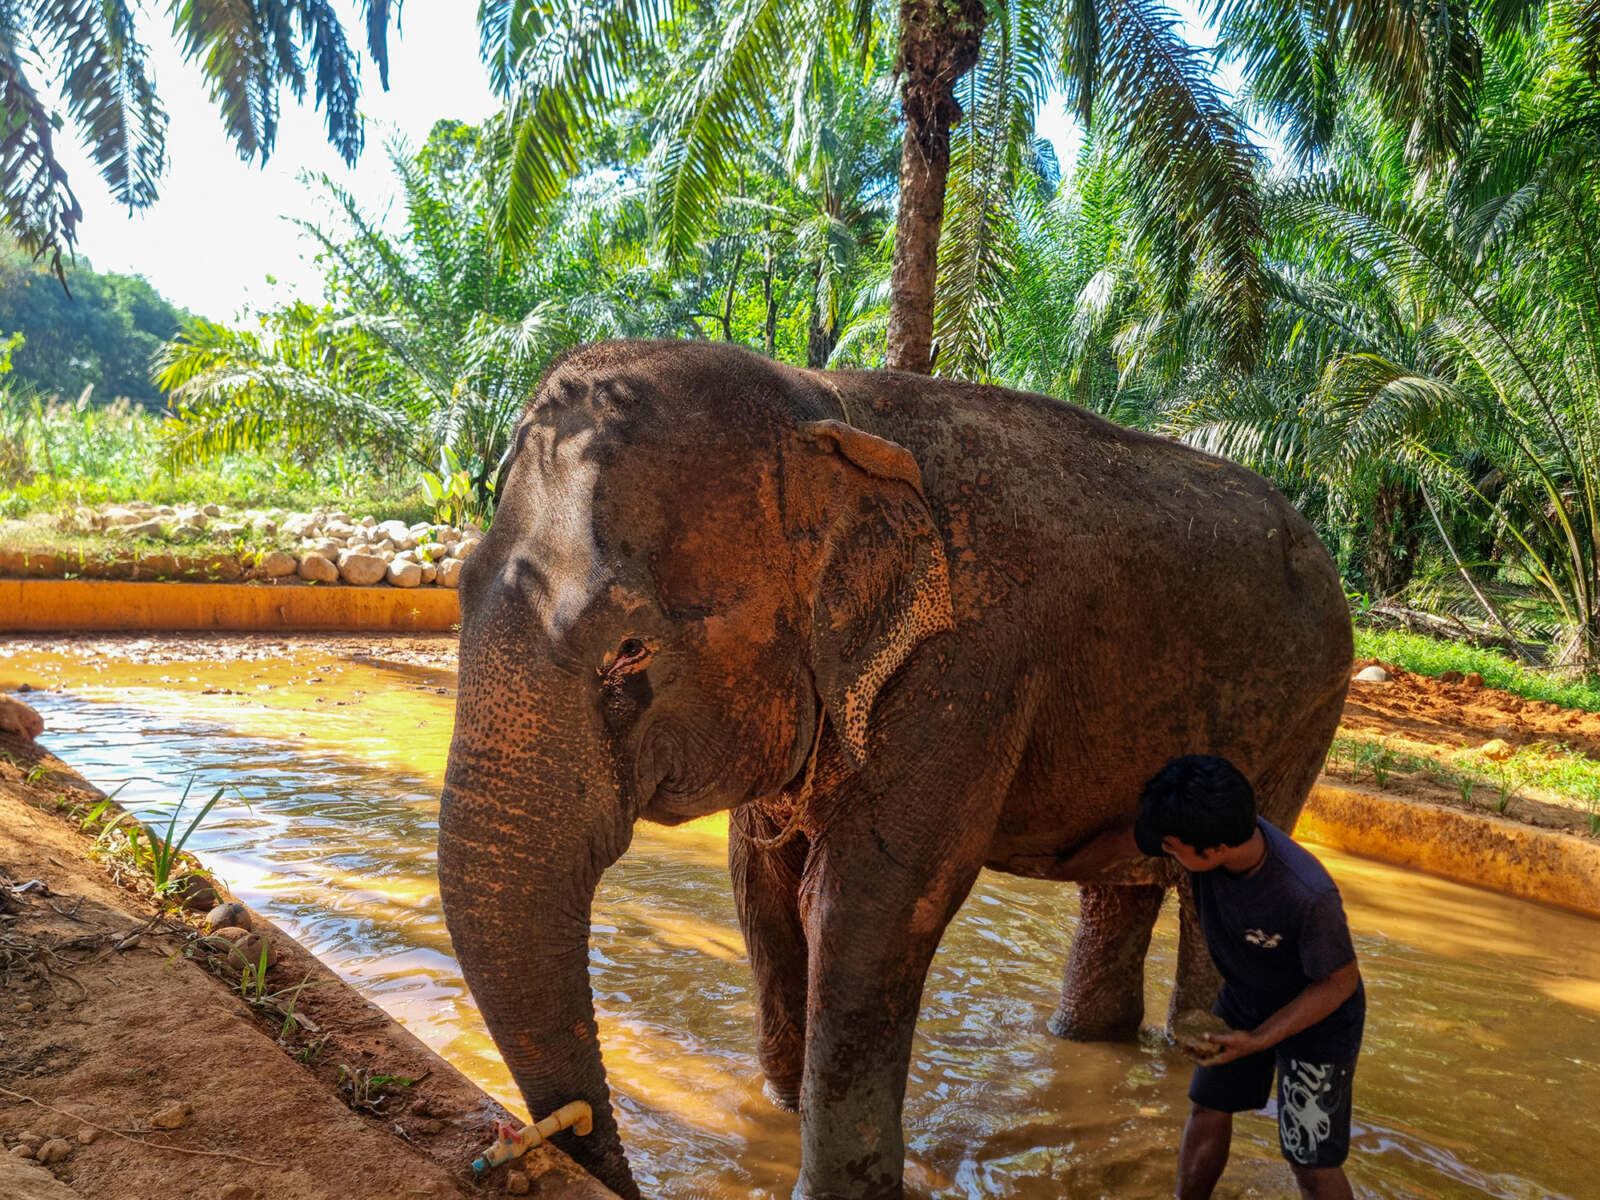 Mahout washing his elephant in Khao Sok, Thailand